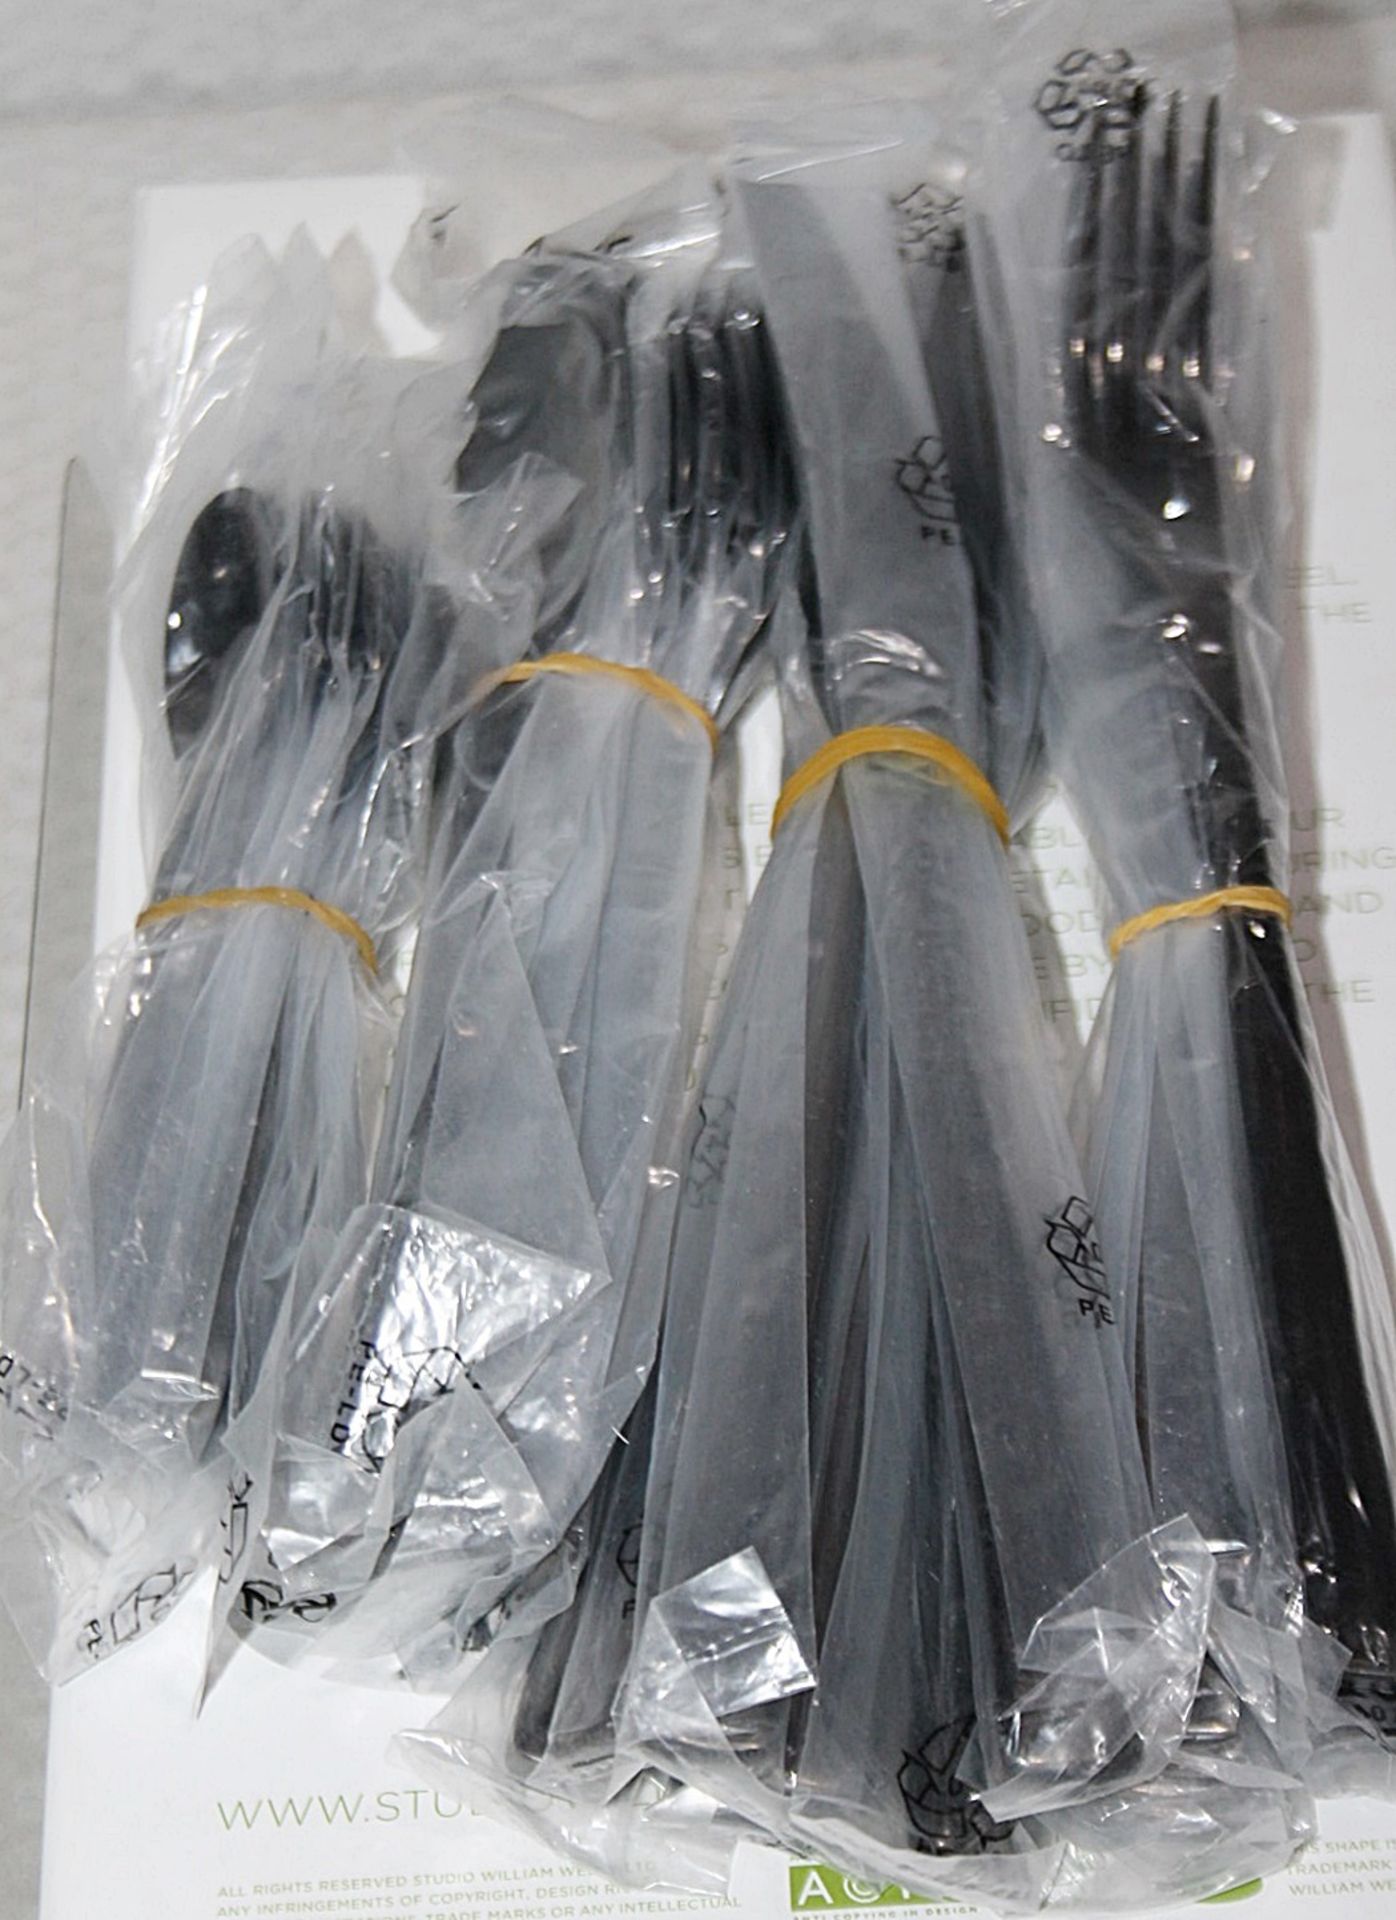 1 x STUDIO WILLIAM 'Tilia Obsidian' 56-Piece Cutlery Set - Original Price £930.00 - Unused Boxed - Image 11 of 11